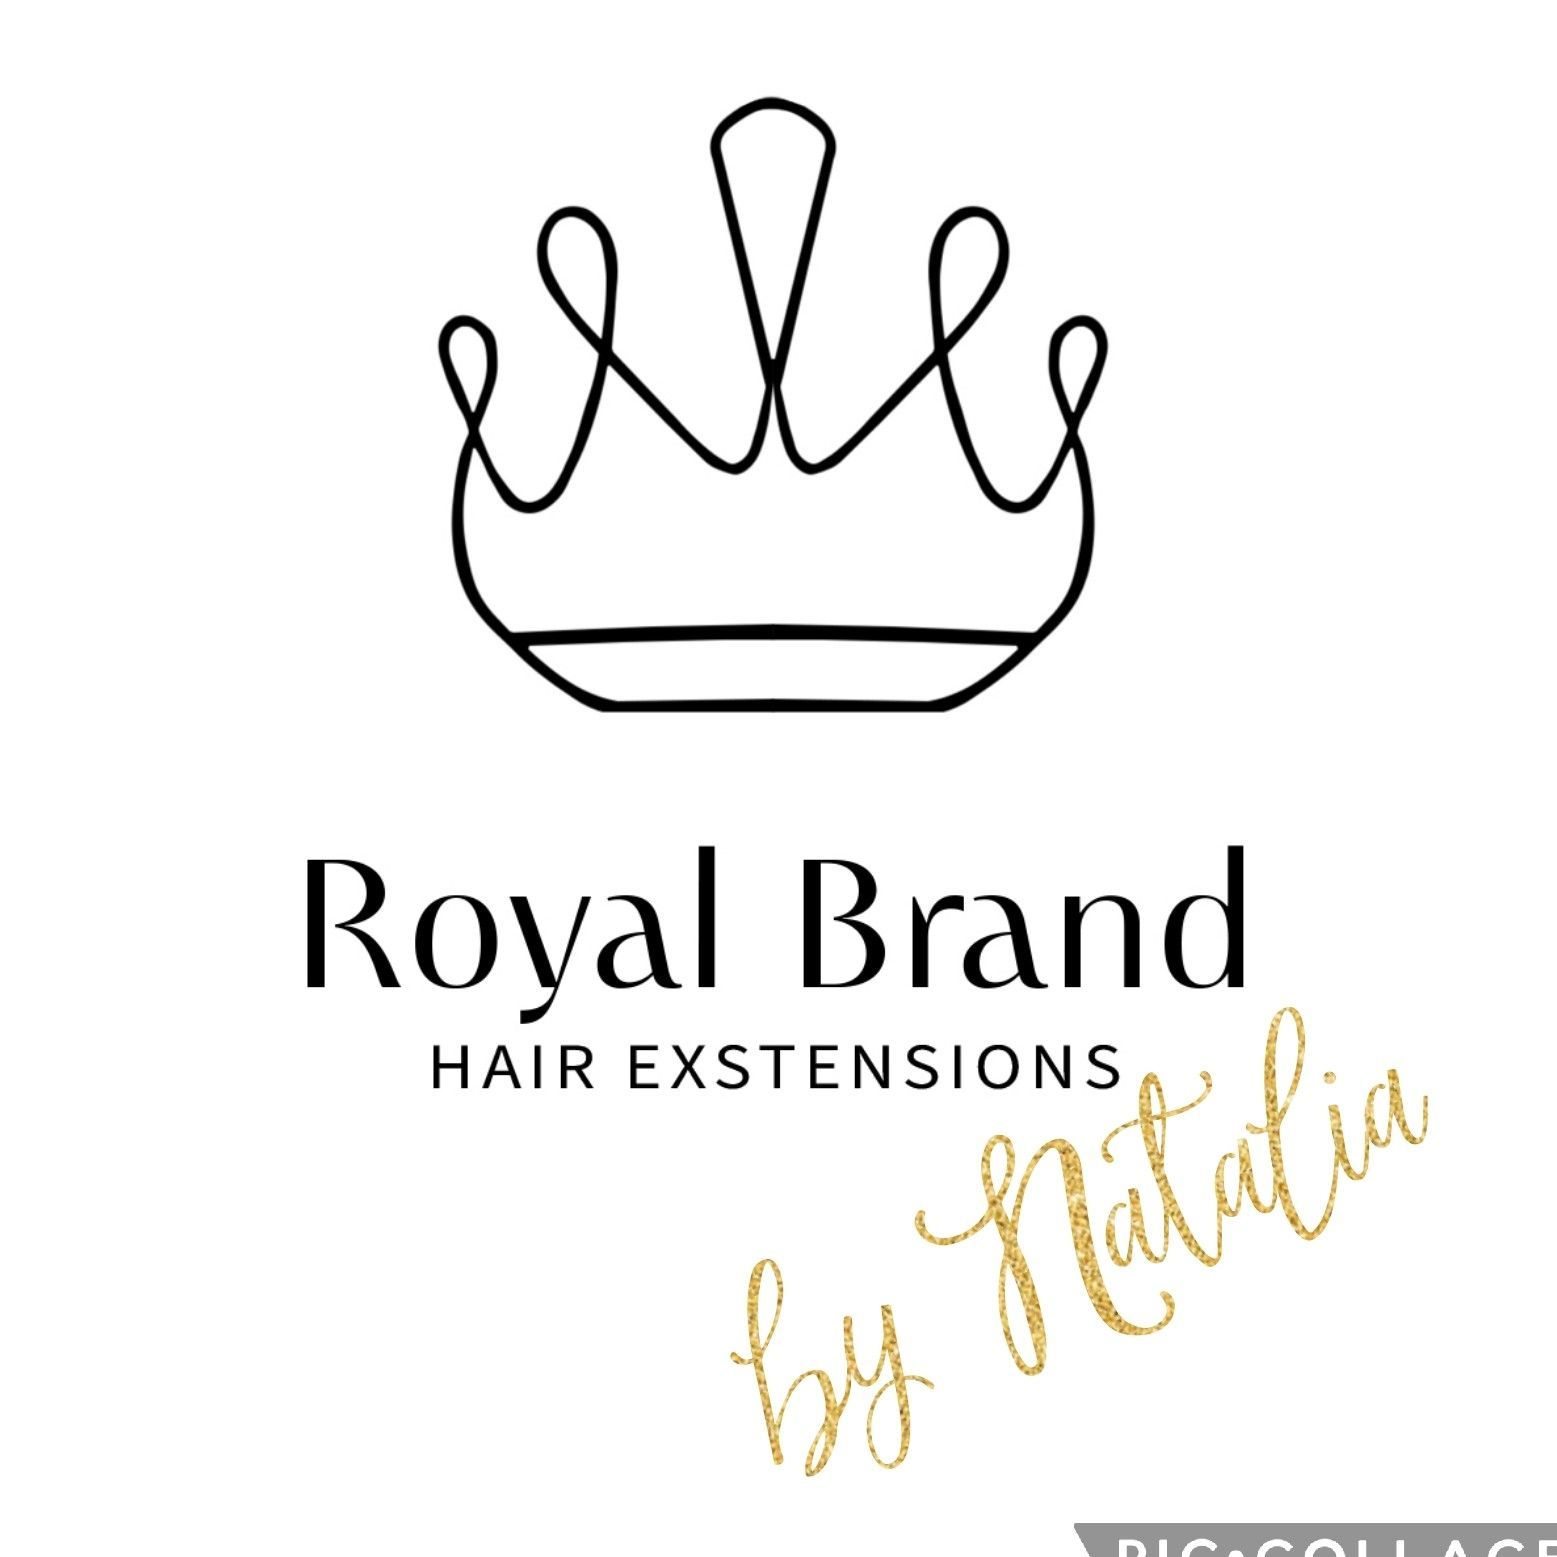 Royal Brand Hair Extensions, Wielka Odrzańska 17, 101, 70-535, Szczecin